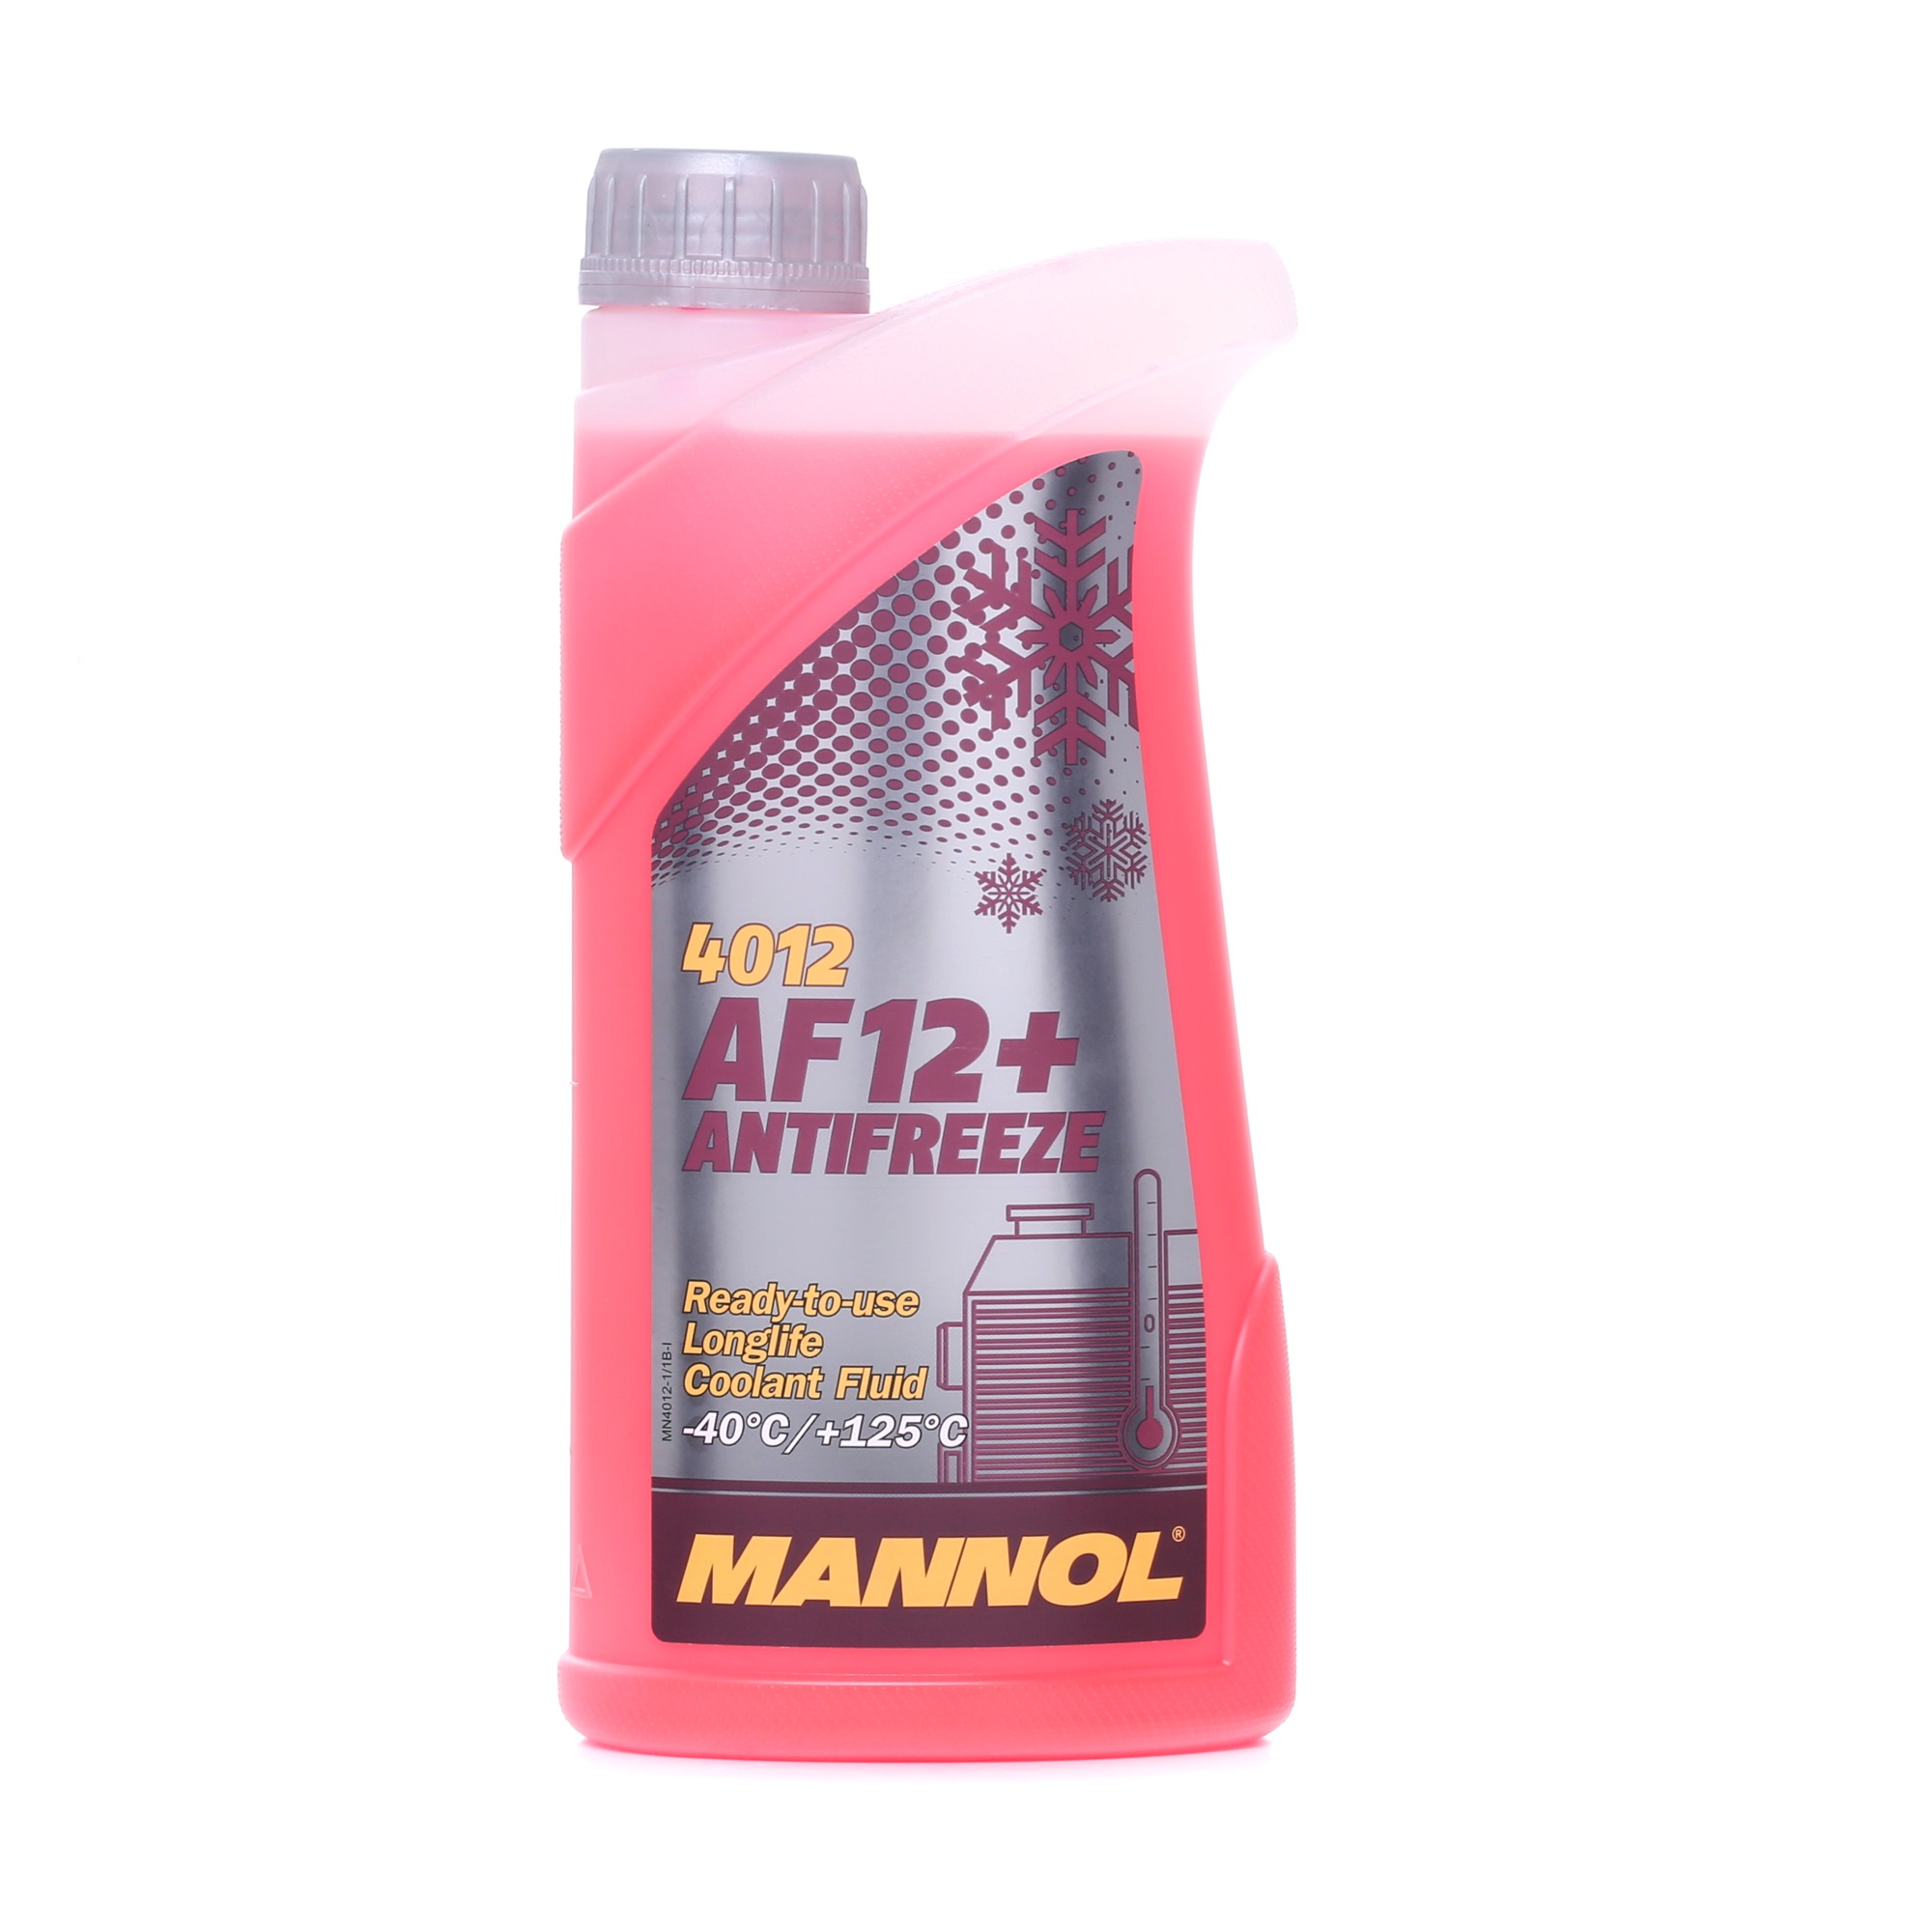 MANNOL AF12+ MN4012-1 Nemrznúca kvapalina G12+ Cervena, 1l